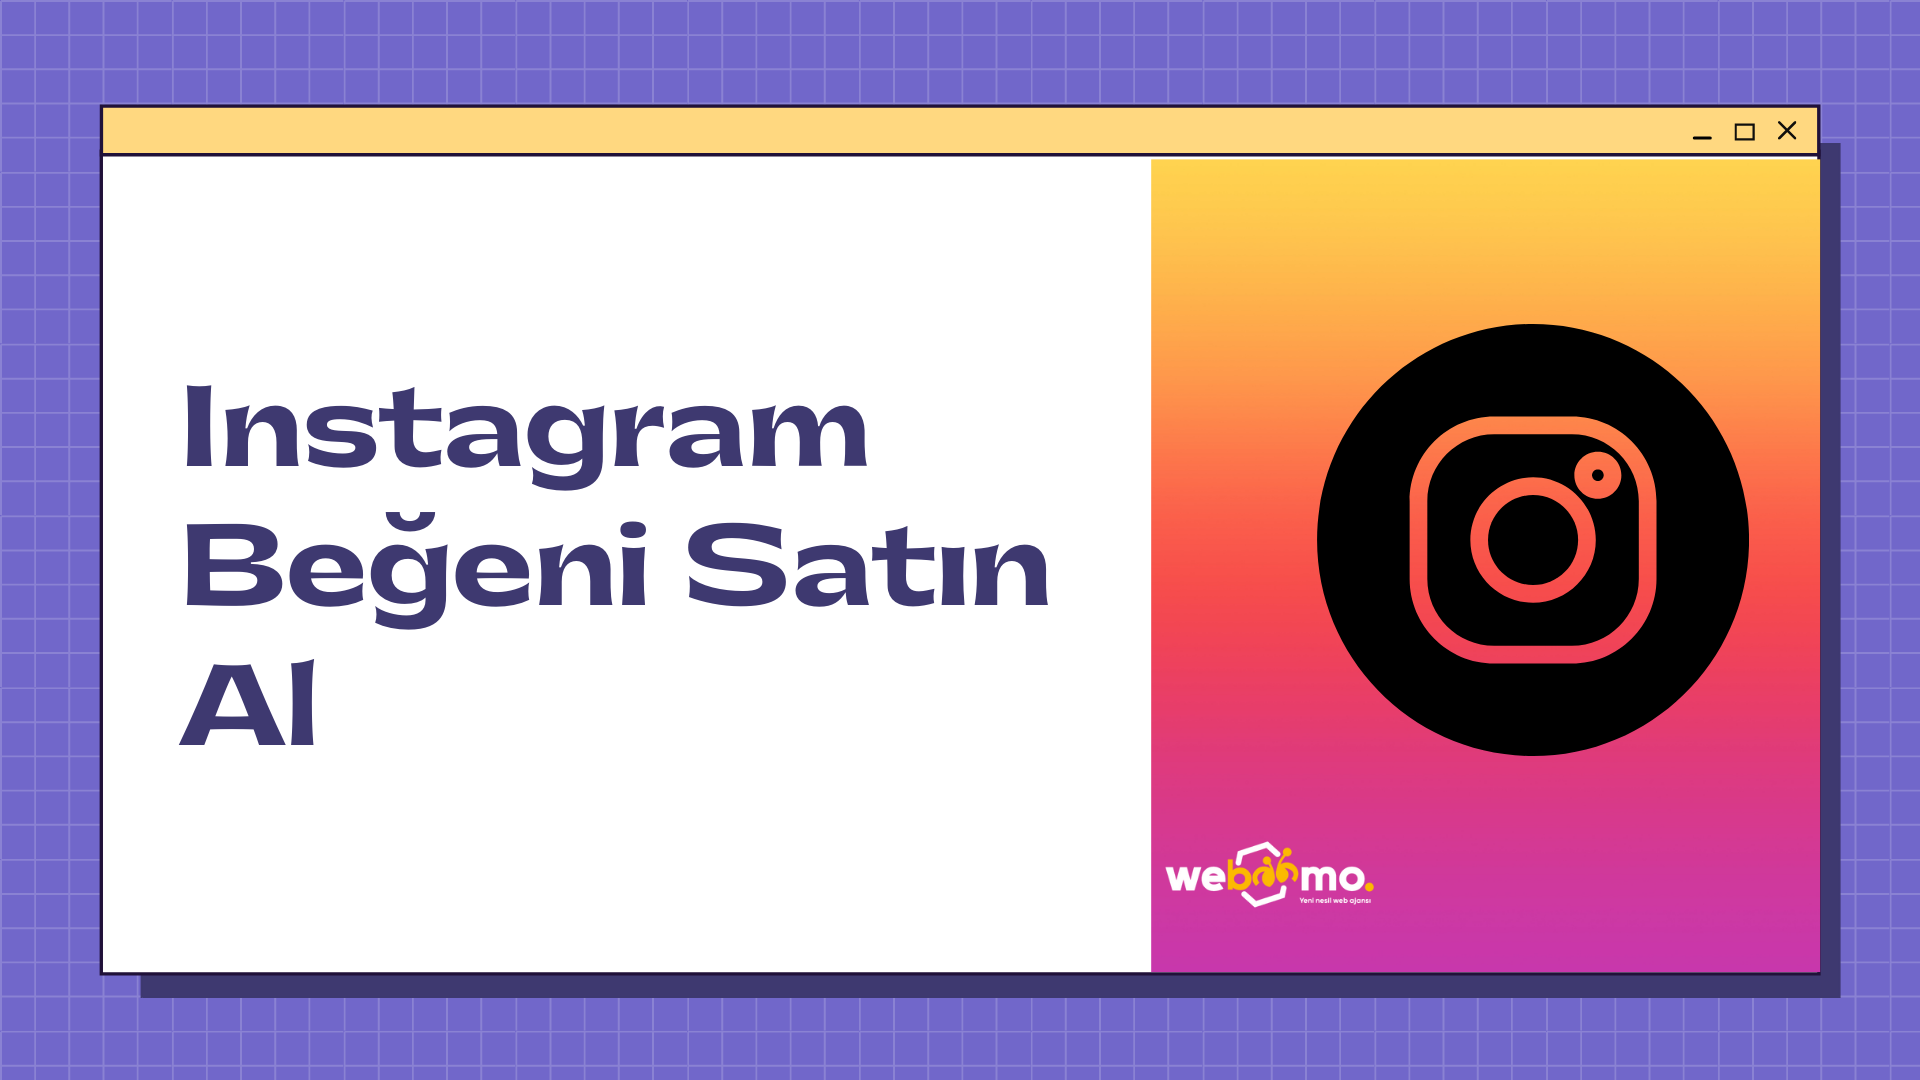 Instagram Begeni Satin Al